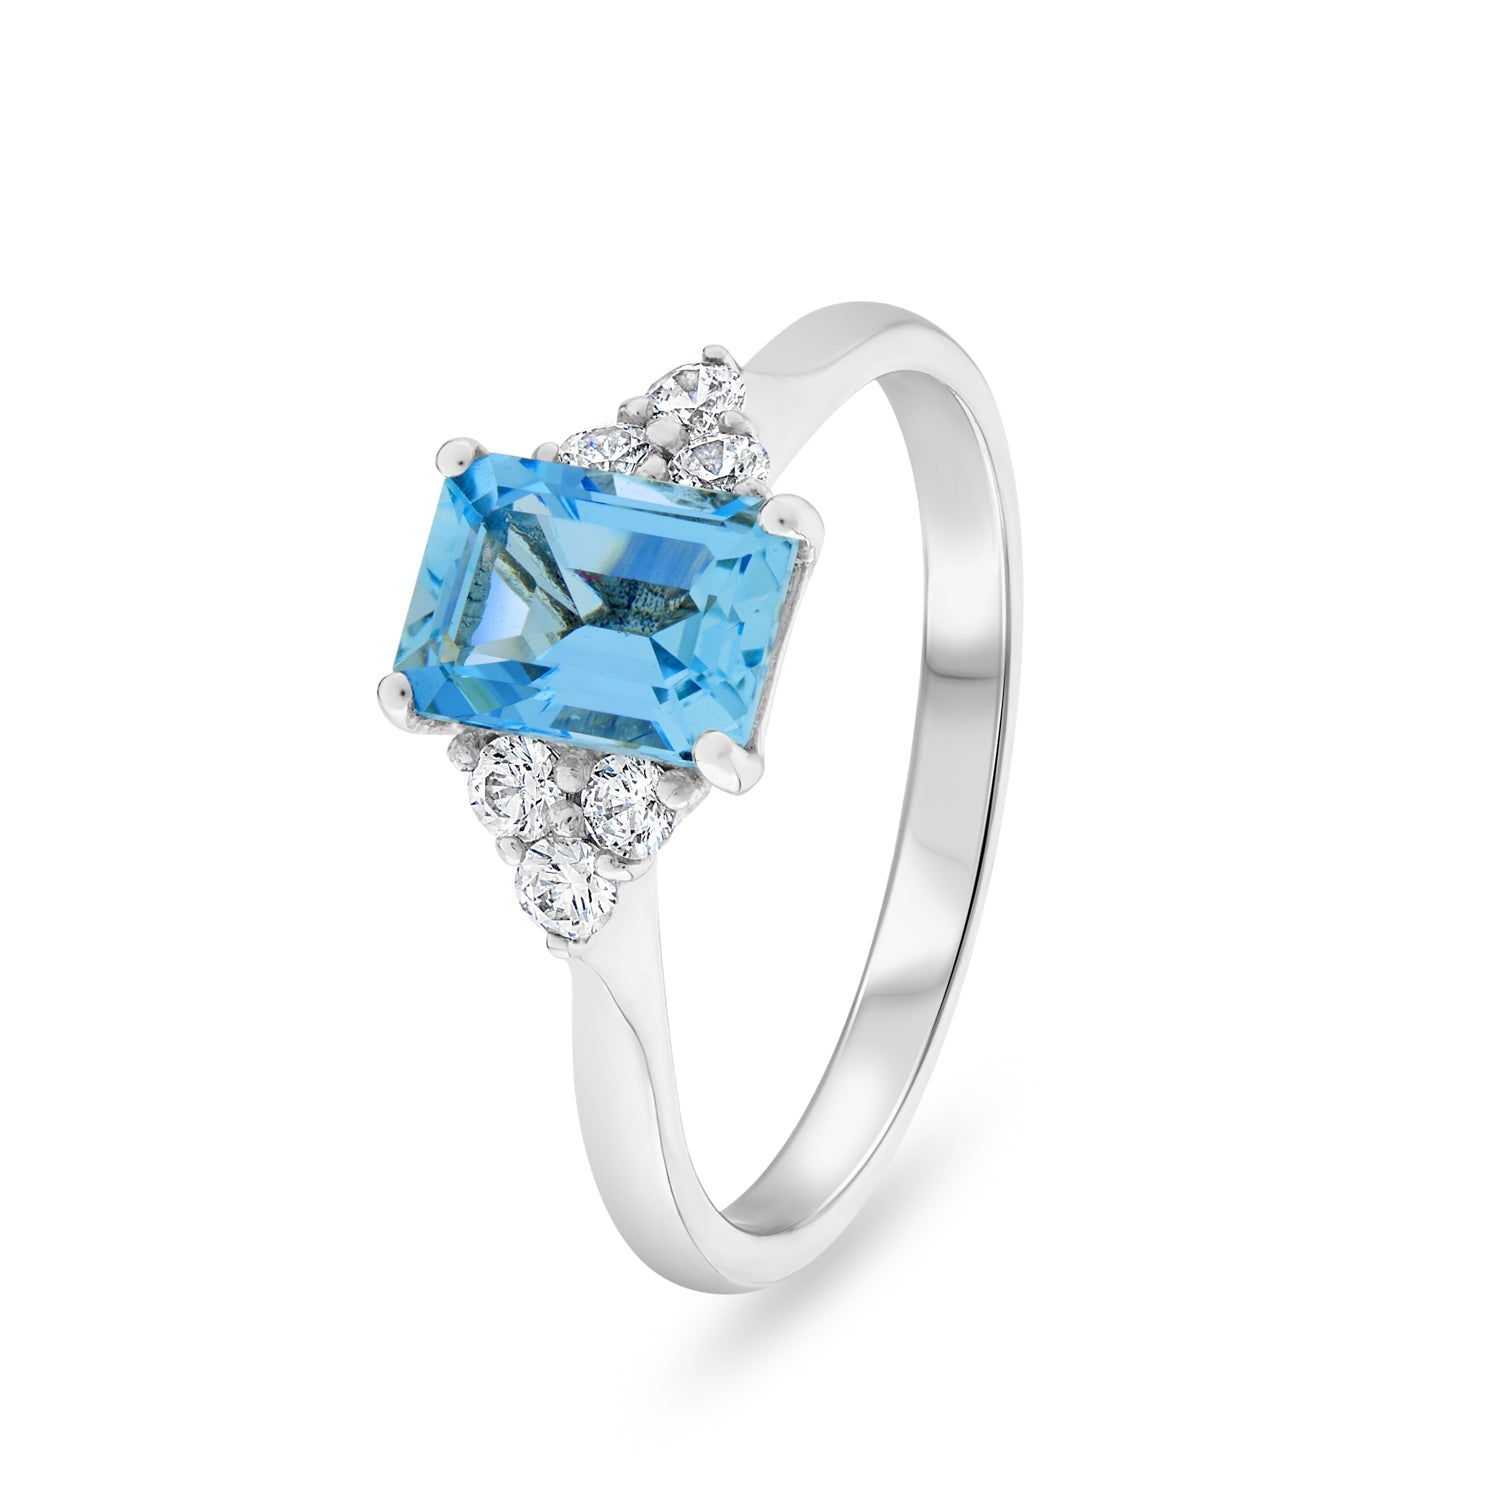 Diamond and Gemstone Ring. c0.22ct